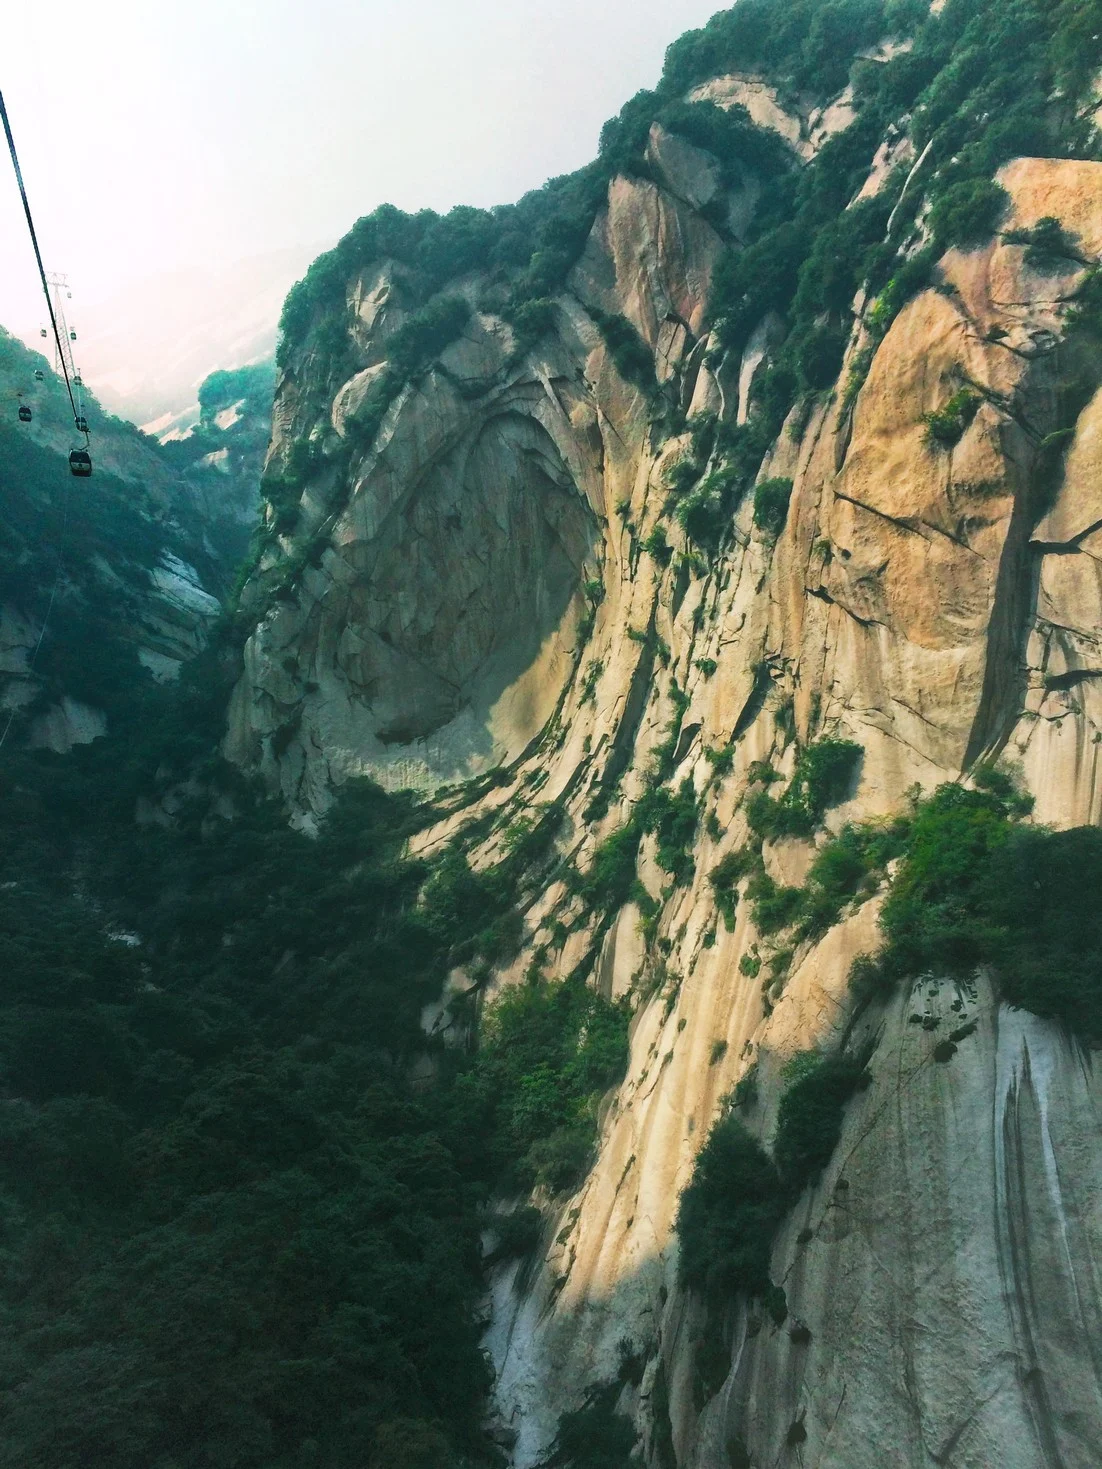 gondolas-in-granite-valley-at-huashan-national-park-1